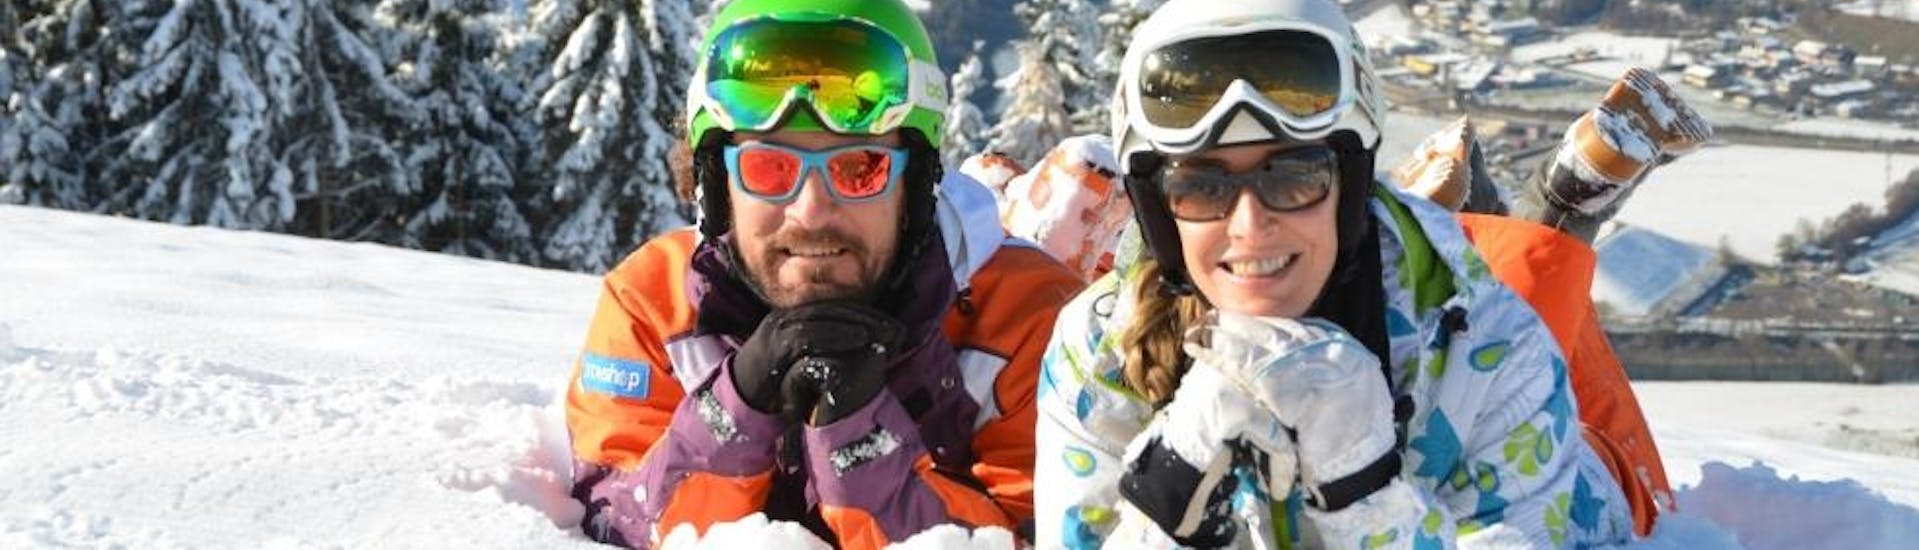 Skilessen voor volwassenen voor alle niveaus met Skischule Toni Gruber.